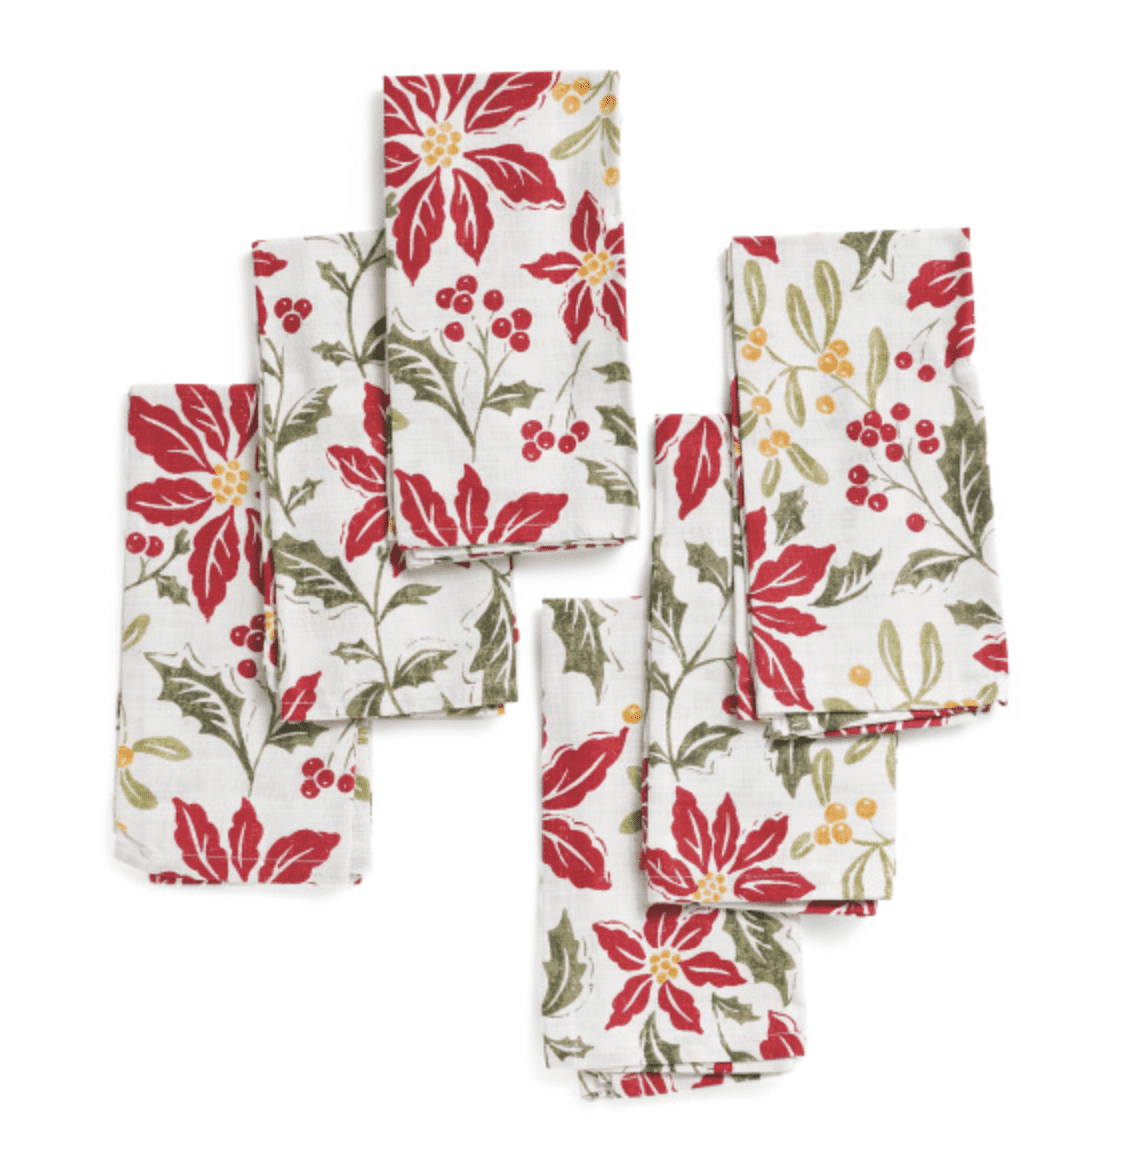 Pacote de seis guardanapos de bloco de impressão com um padrão de poinsétias, bagas e folhas em um fundo branco